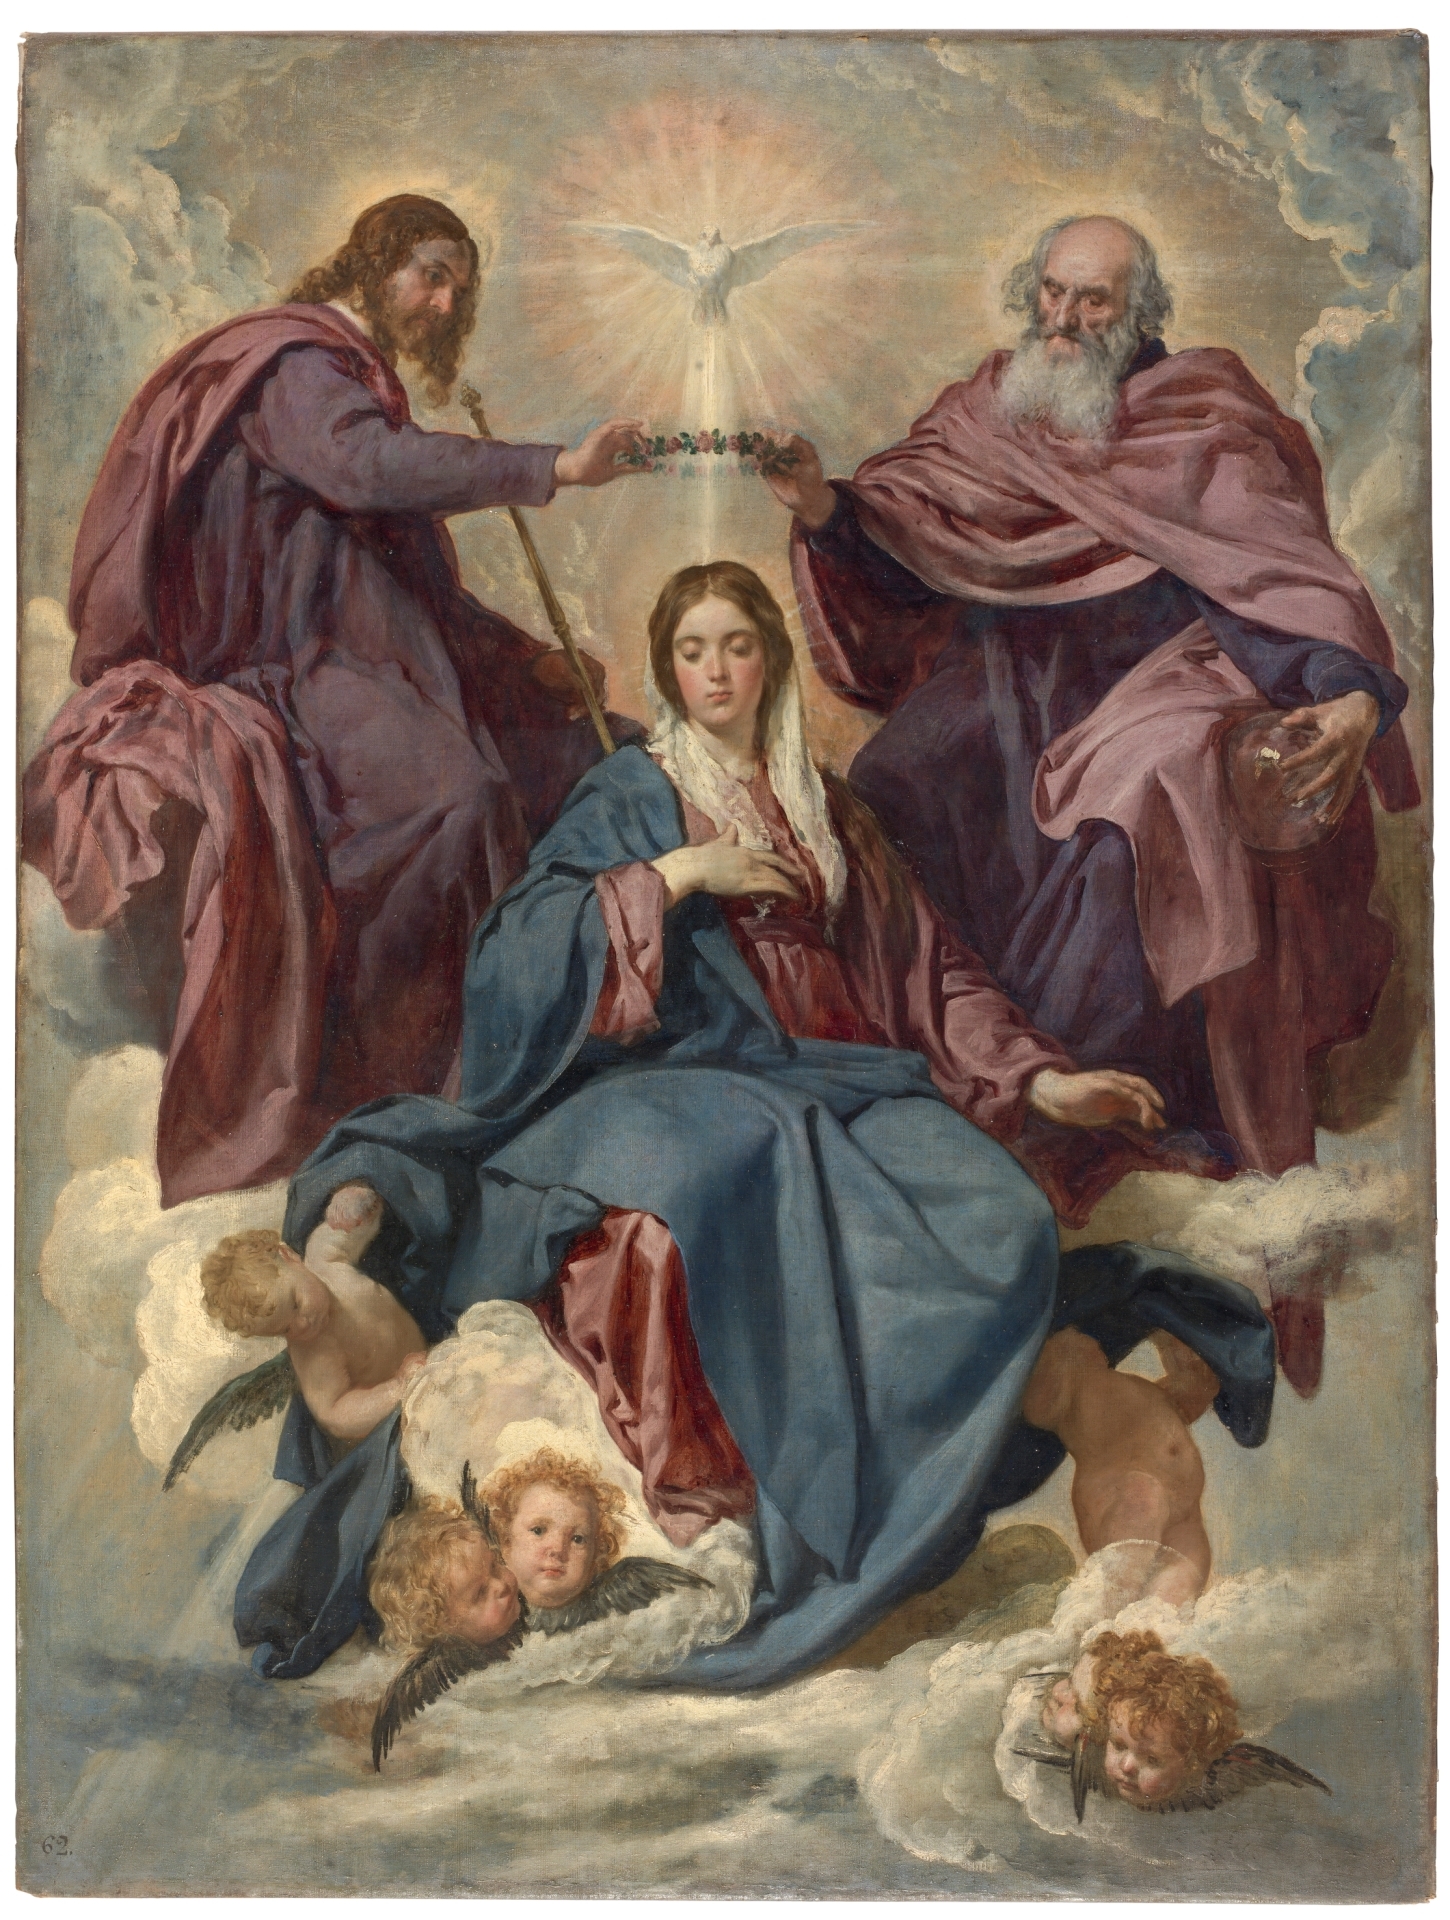 The Coronation of the Virgin painted by Diego Rodríguez de Silva y Velázquez, 1636, Museo del Prado.